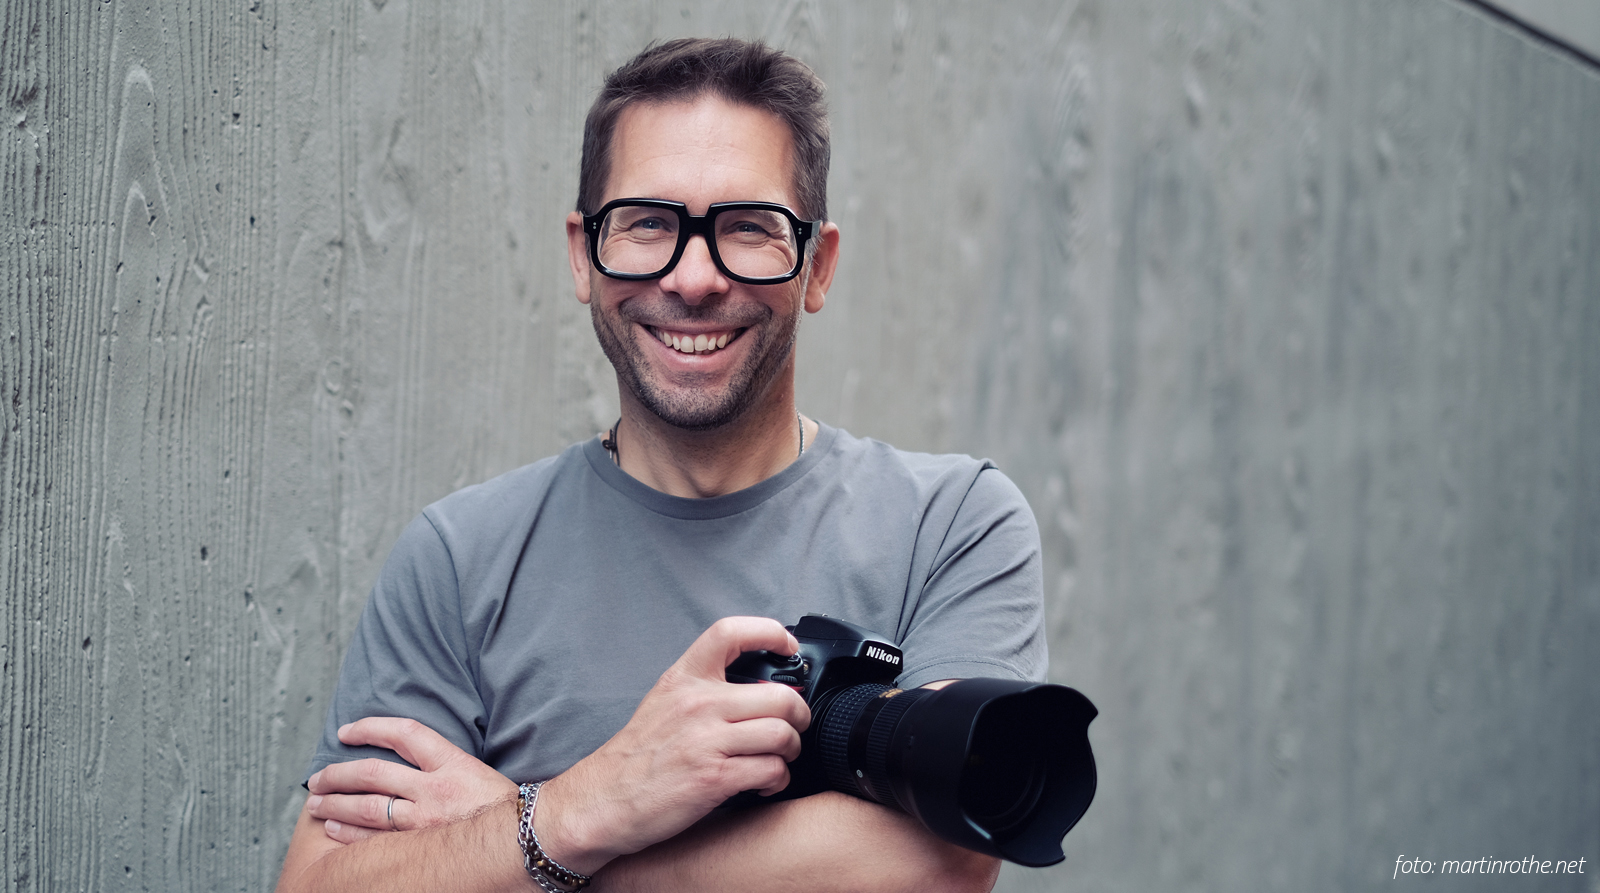 André Weber mit Kamera vor grauer Wand und stylishe Brille von Ottica Urbani